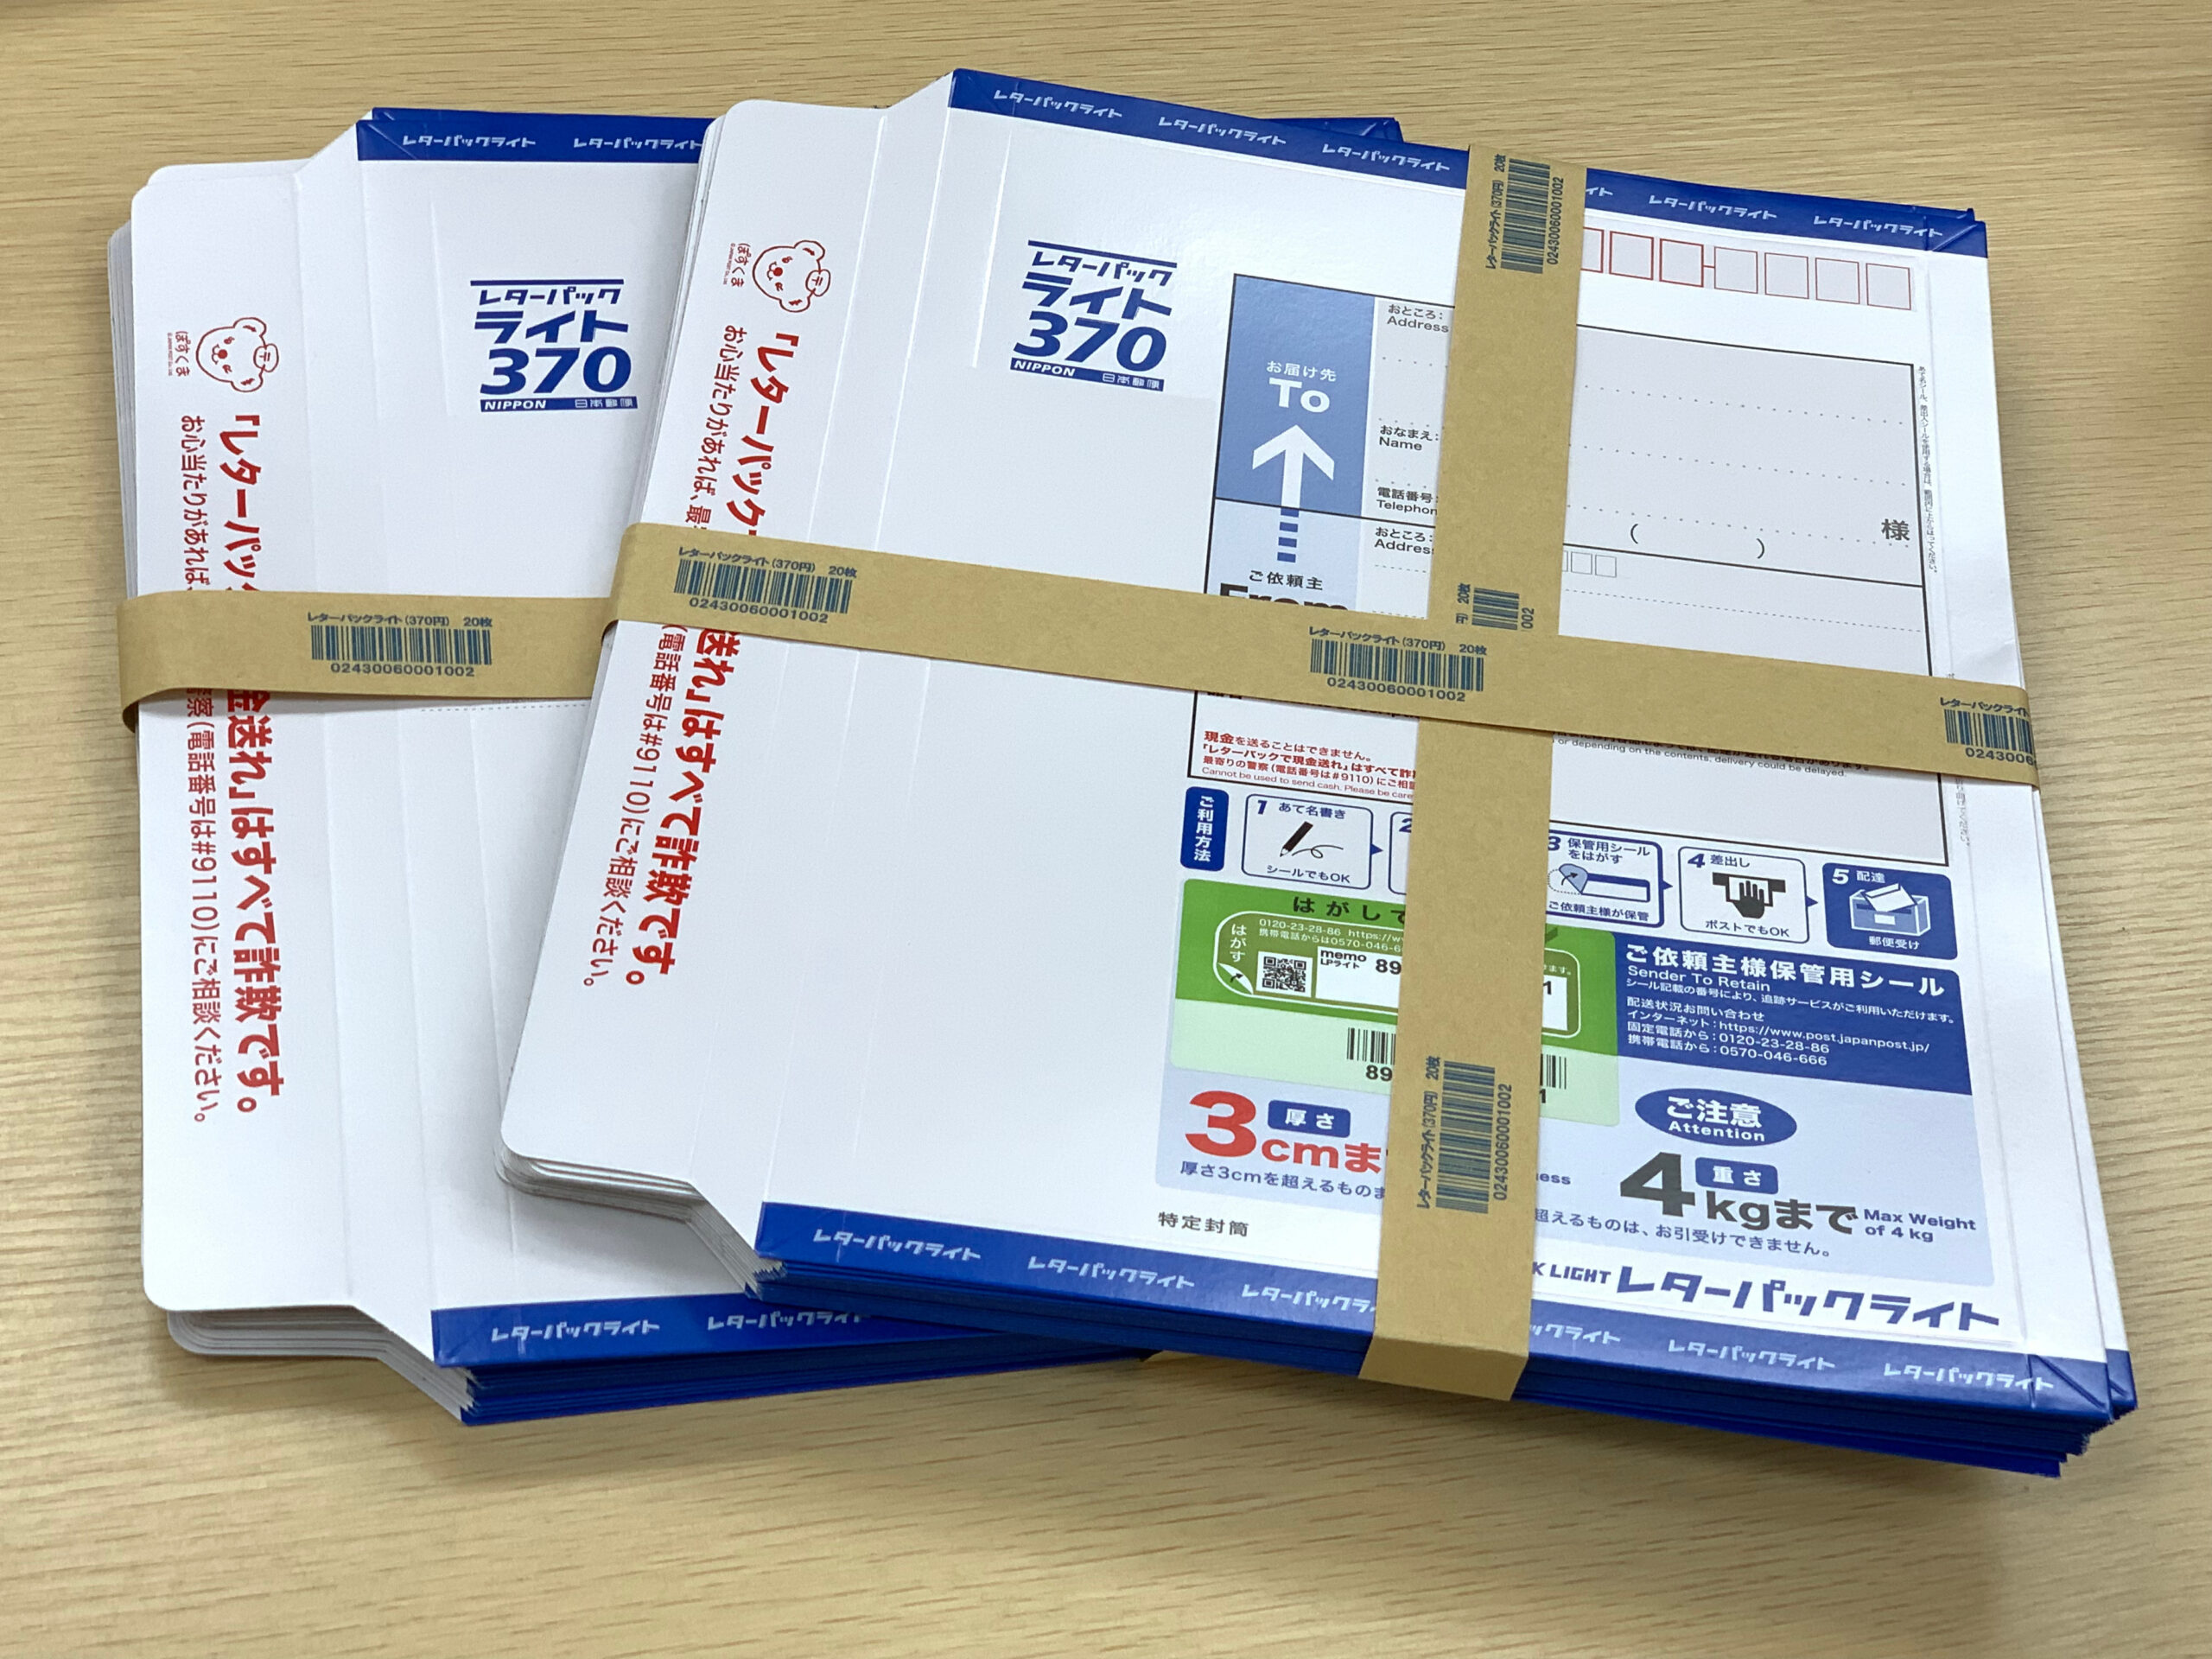 レターパックを購入するなら、日本郵便株式会社のネットショッピング「切手・はがきストア」が簡単で便利です。